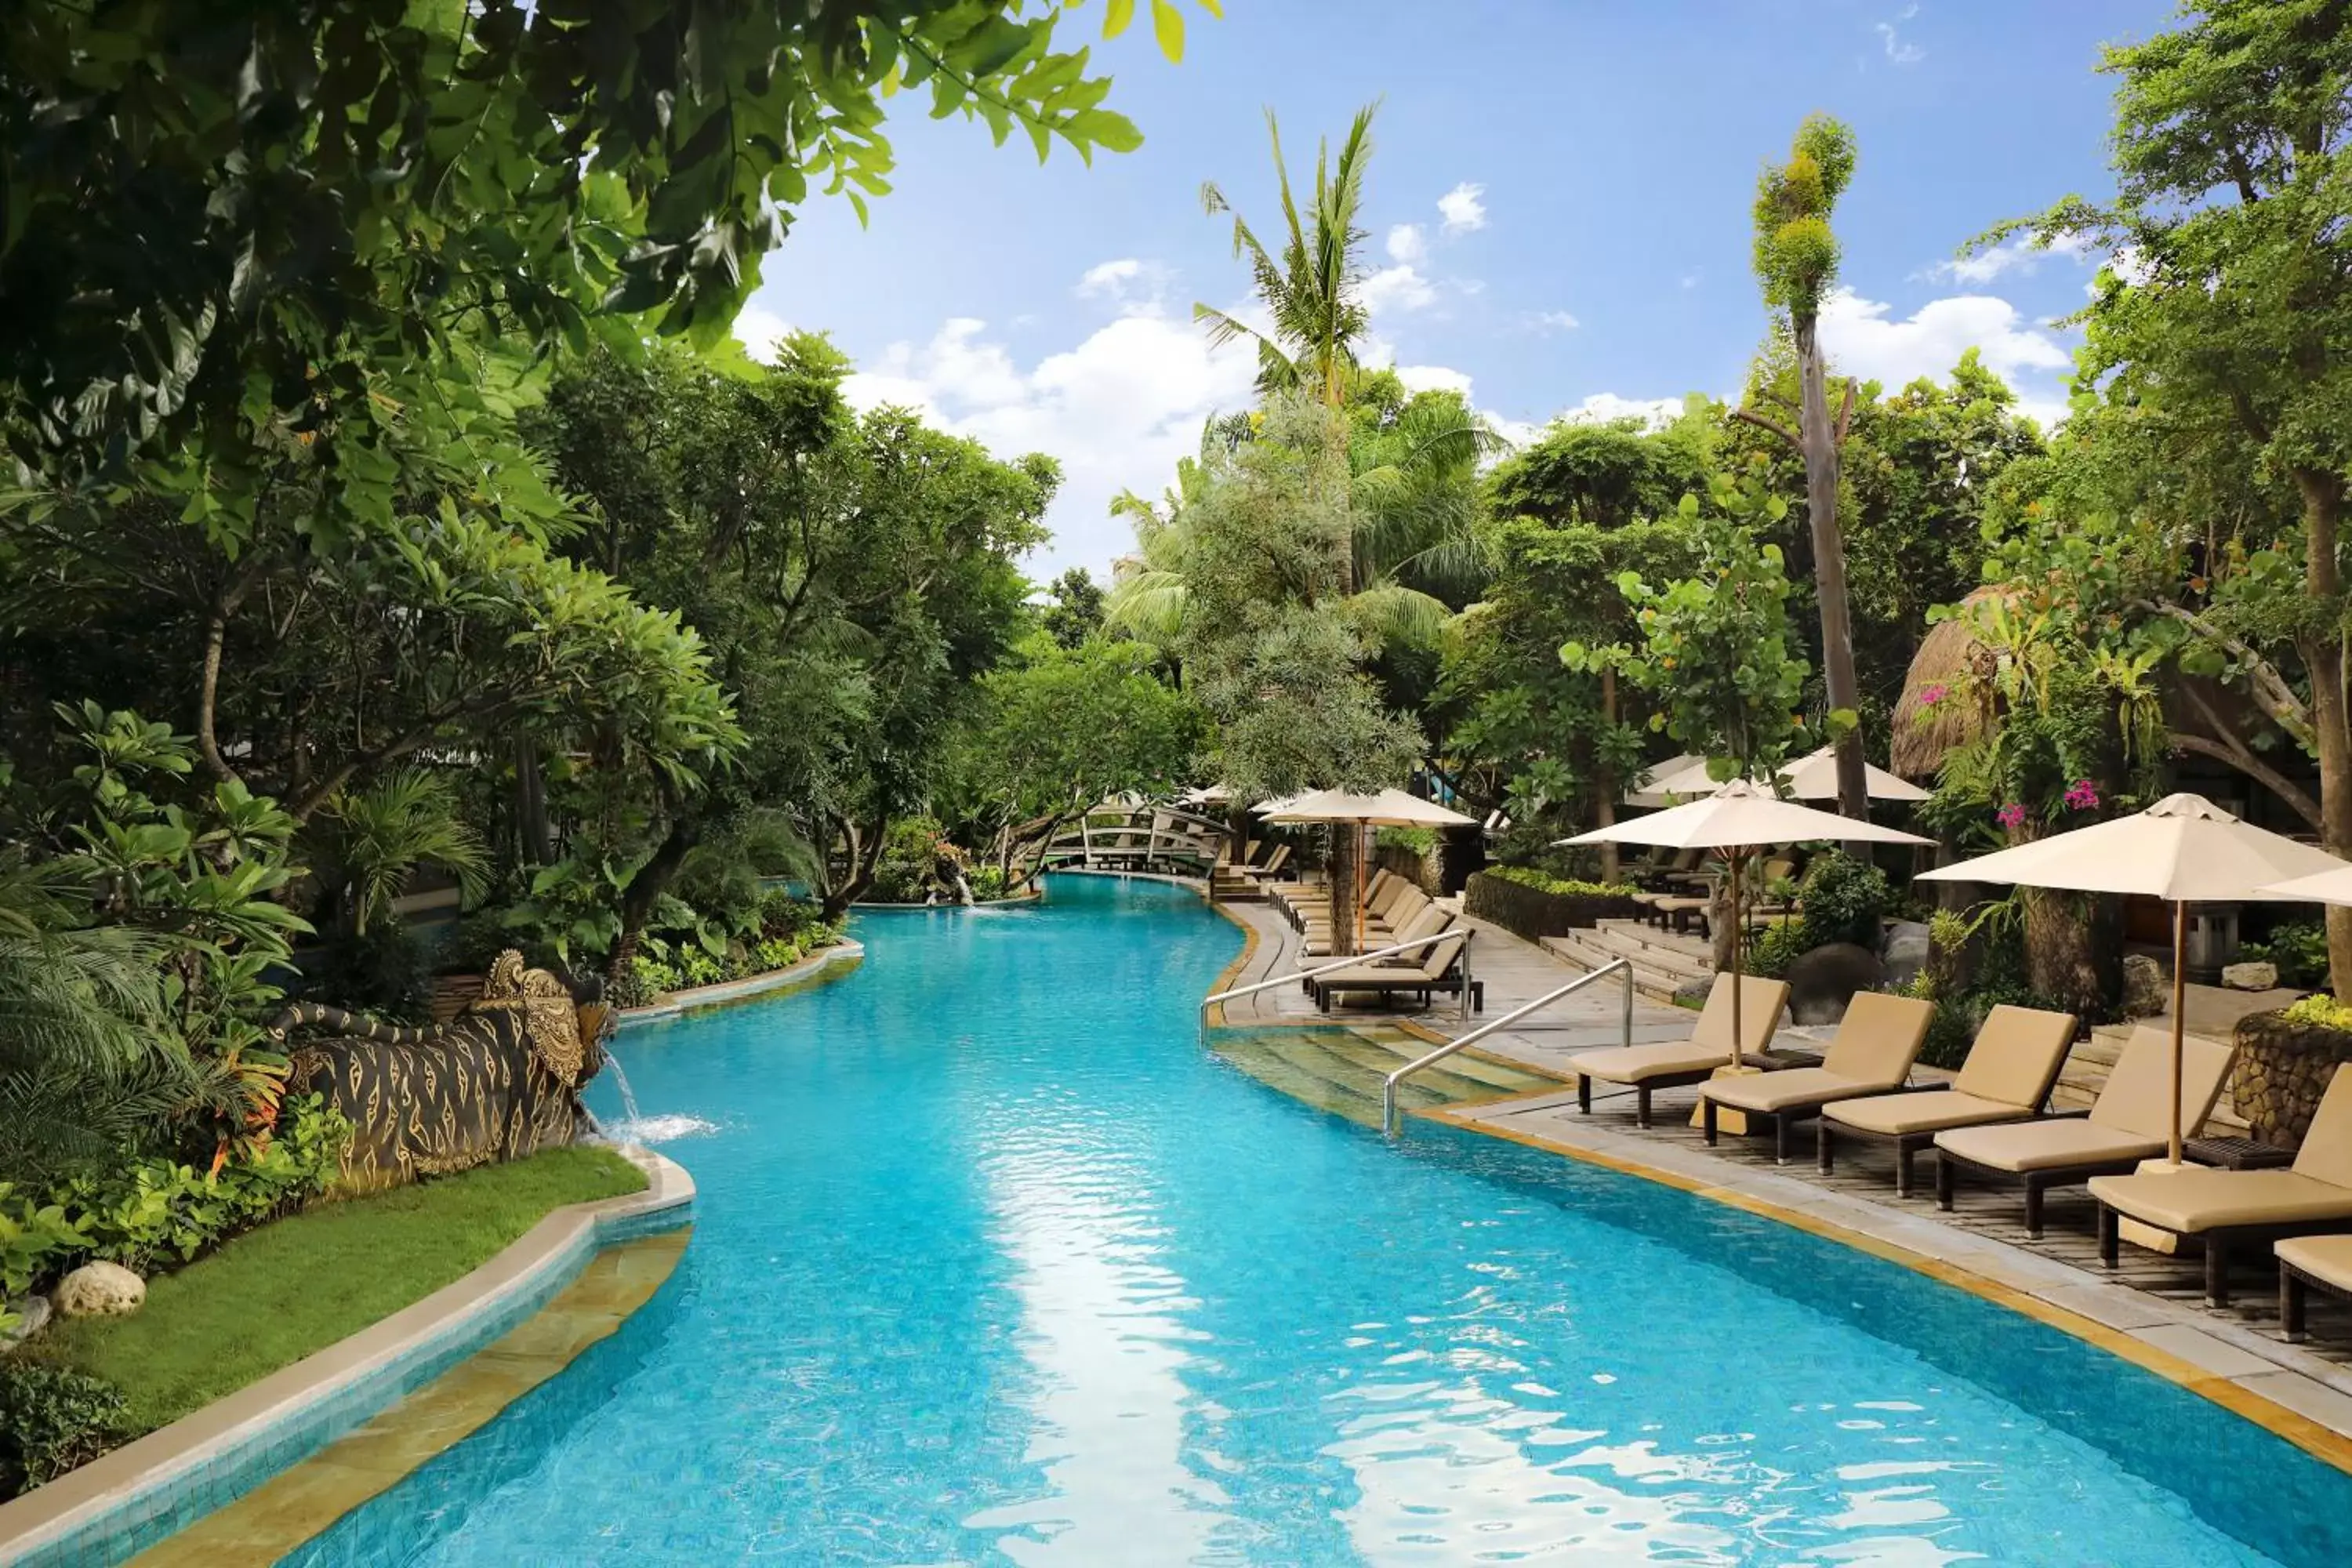 Pool View in Padma Resort Legian